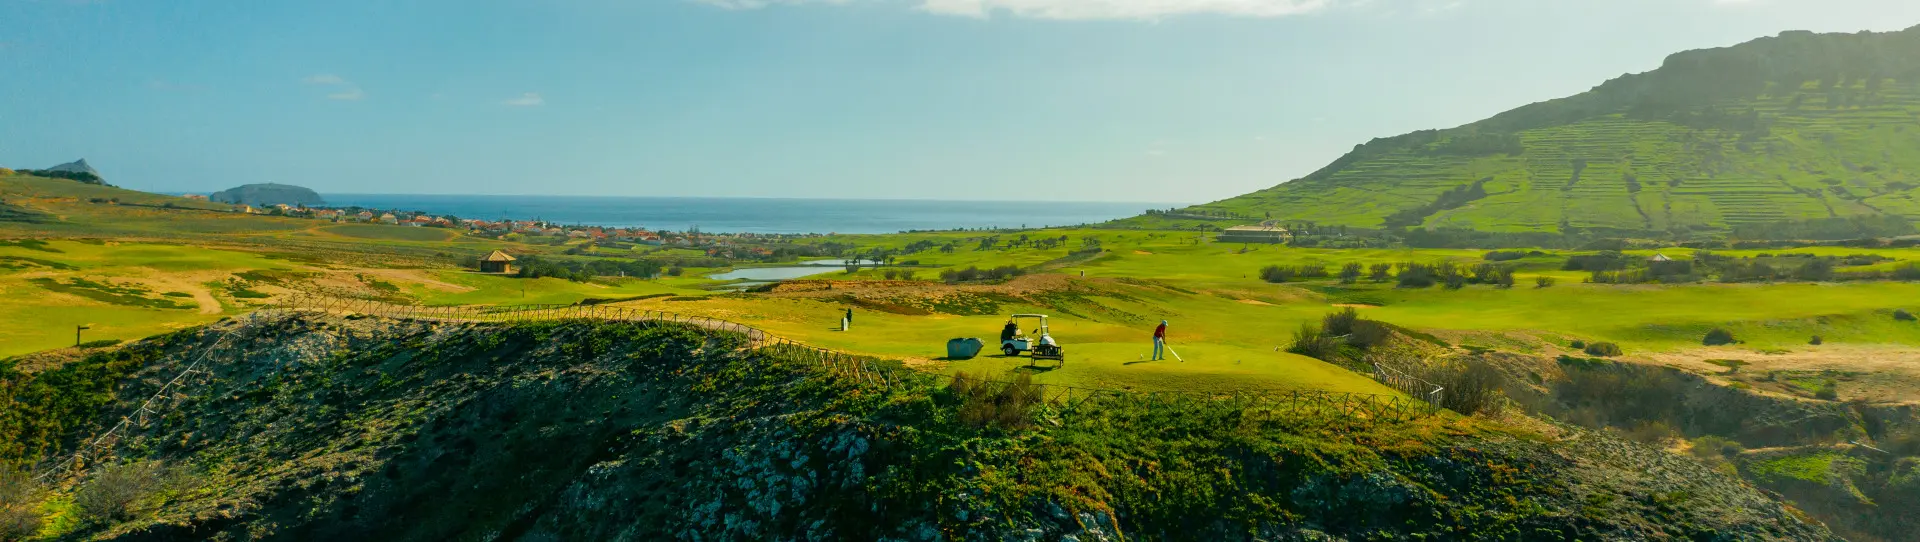 Portugal golf courses - Porto Santo Golfe - Photo 2